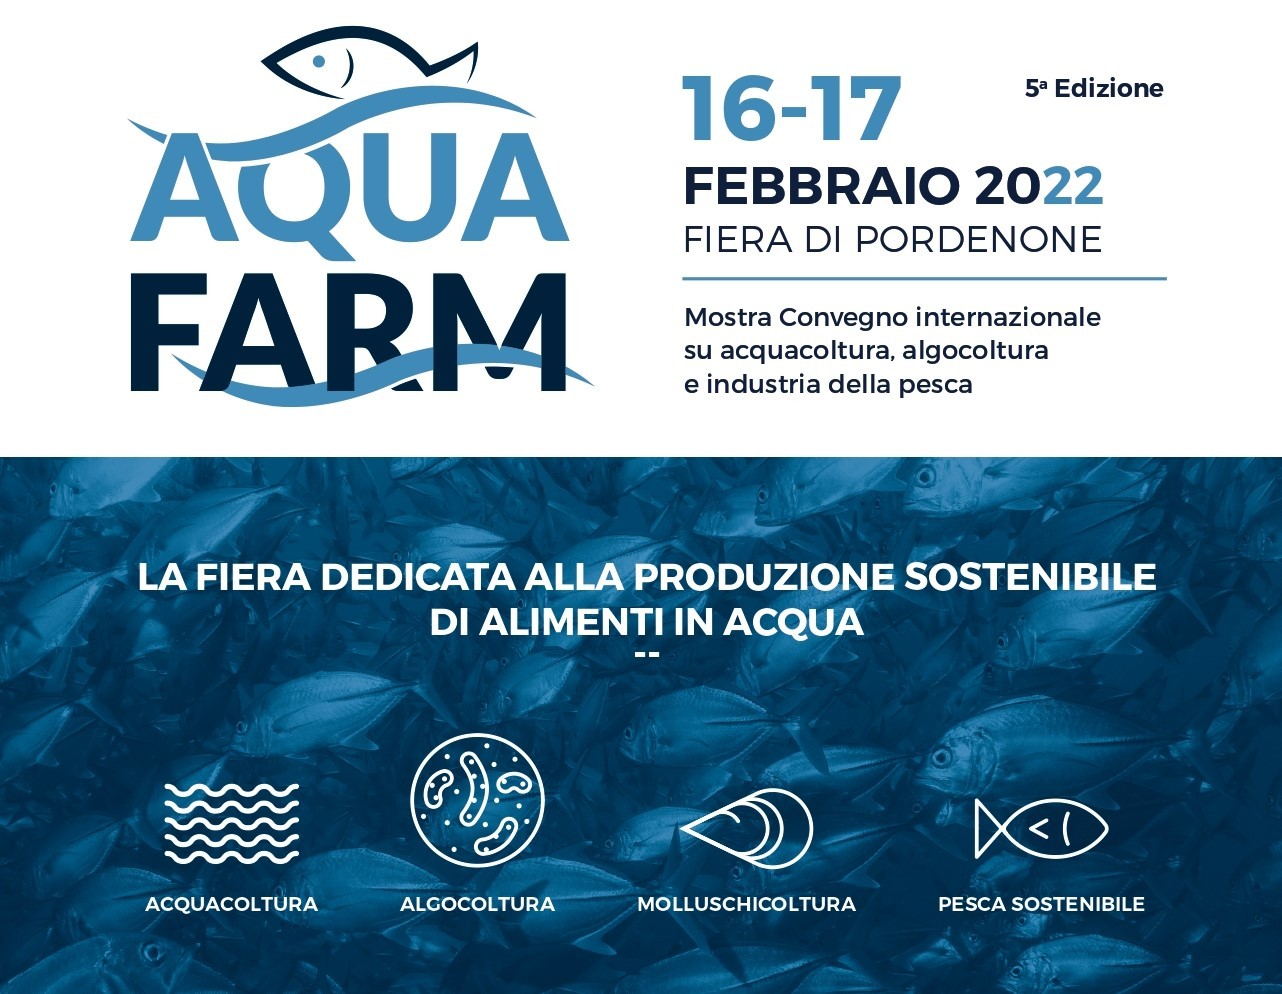 AquaFarm lancia il contest che premia l’innovazione in acquacoltura